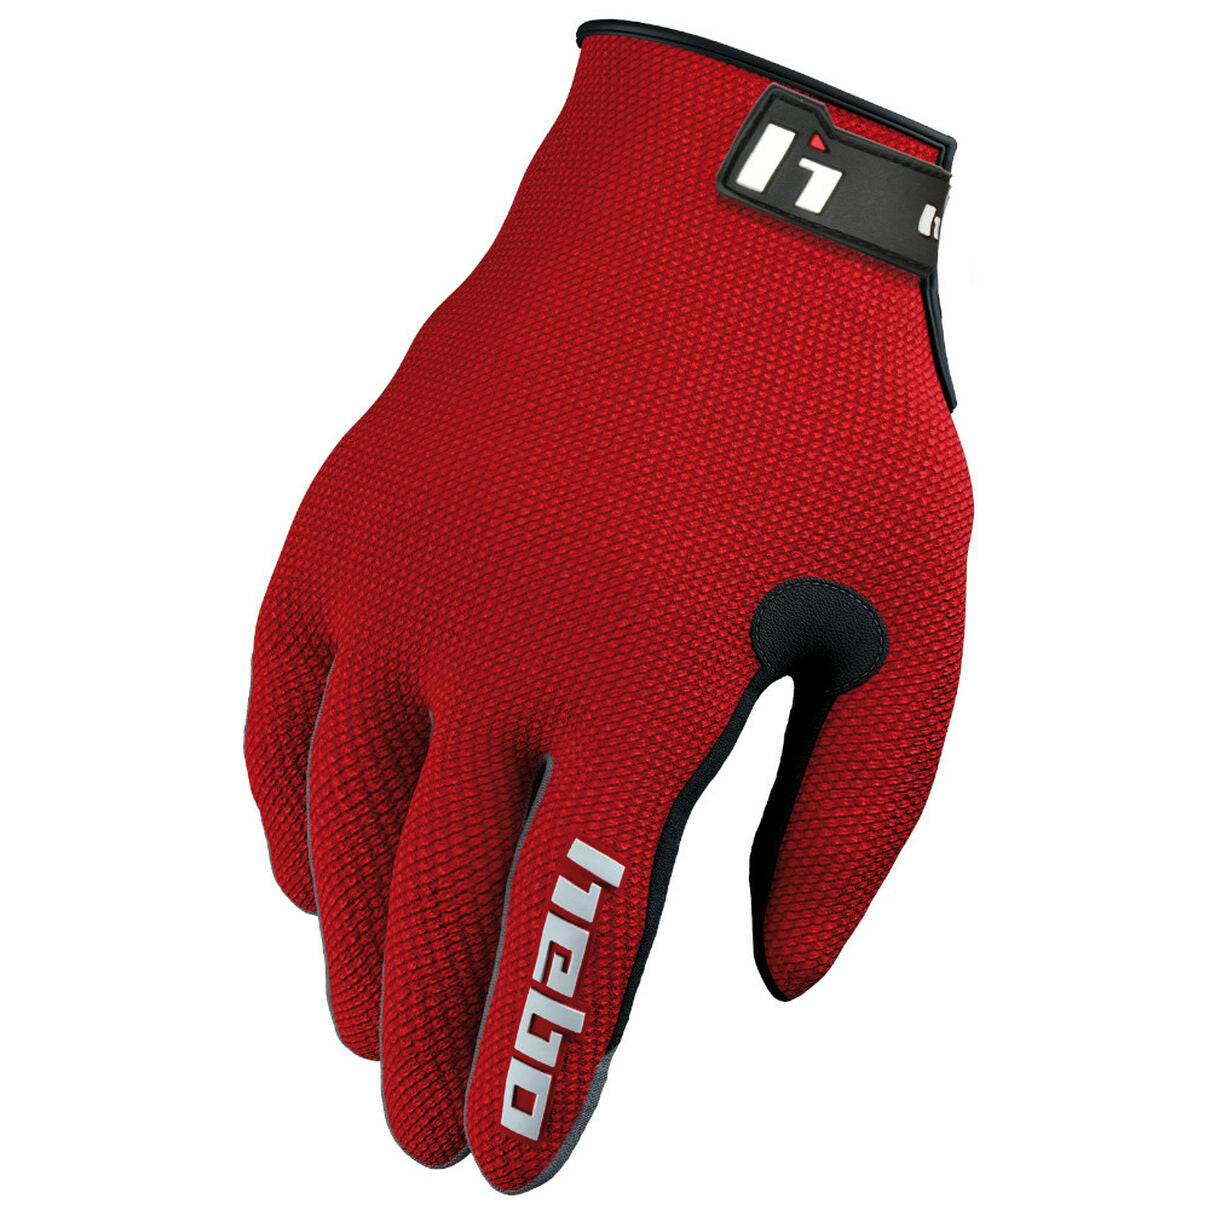 Hebo Trials Glove Team IV Red